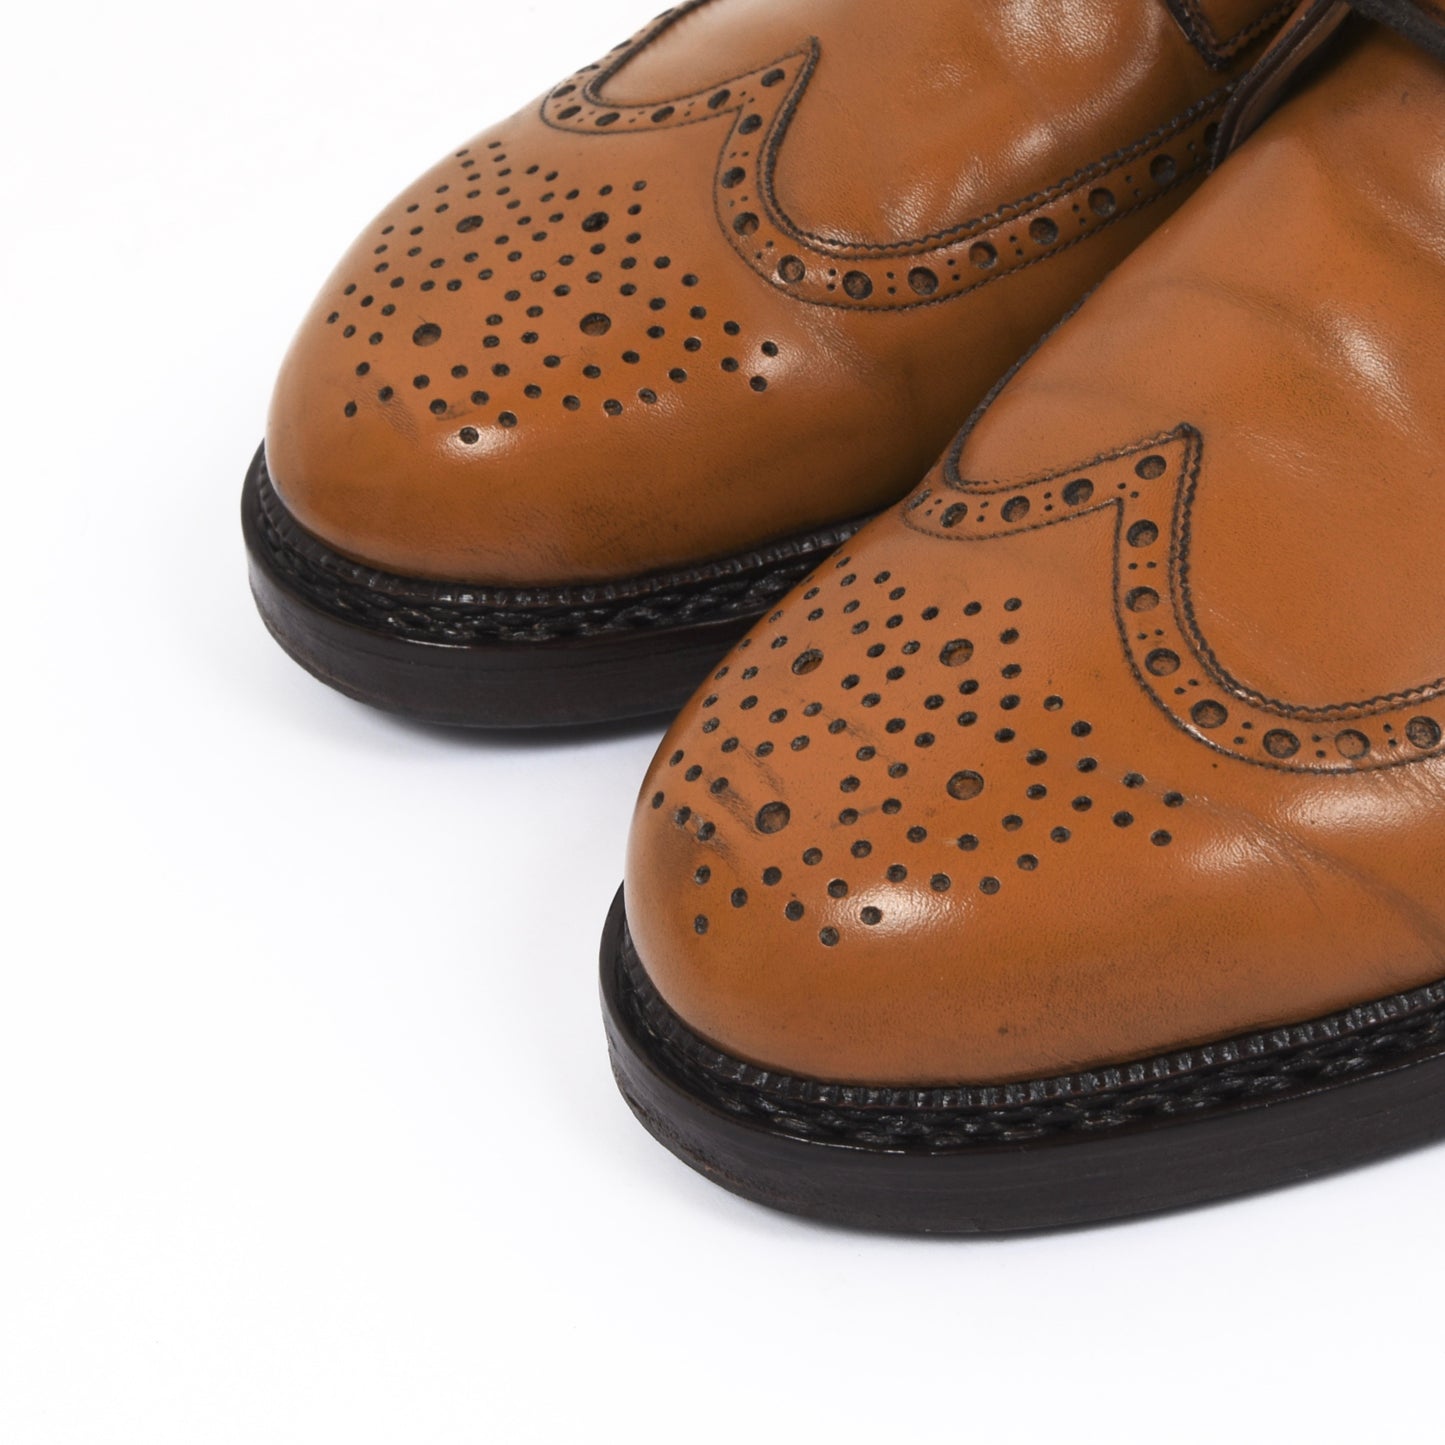 László Vass Shoes Size 43 - Cognac Tan